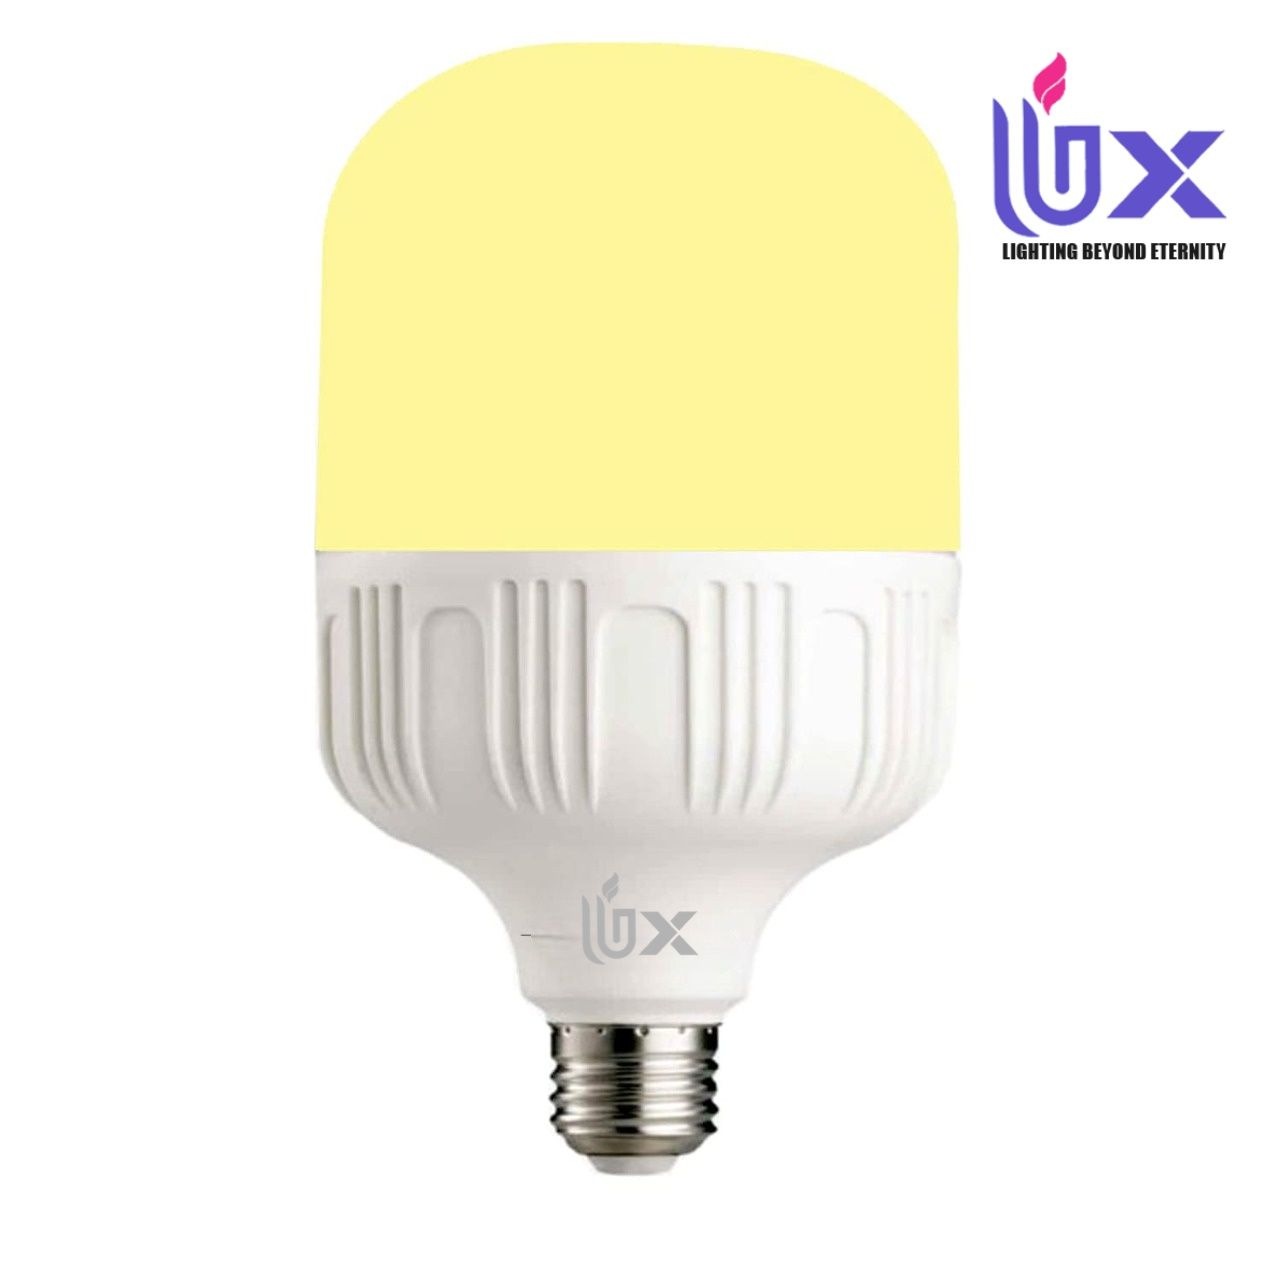 UBX Ultra 50-Watt E27 BASE High Power LED Bulb (Warm White 3000K) (Pack of 1)